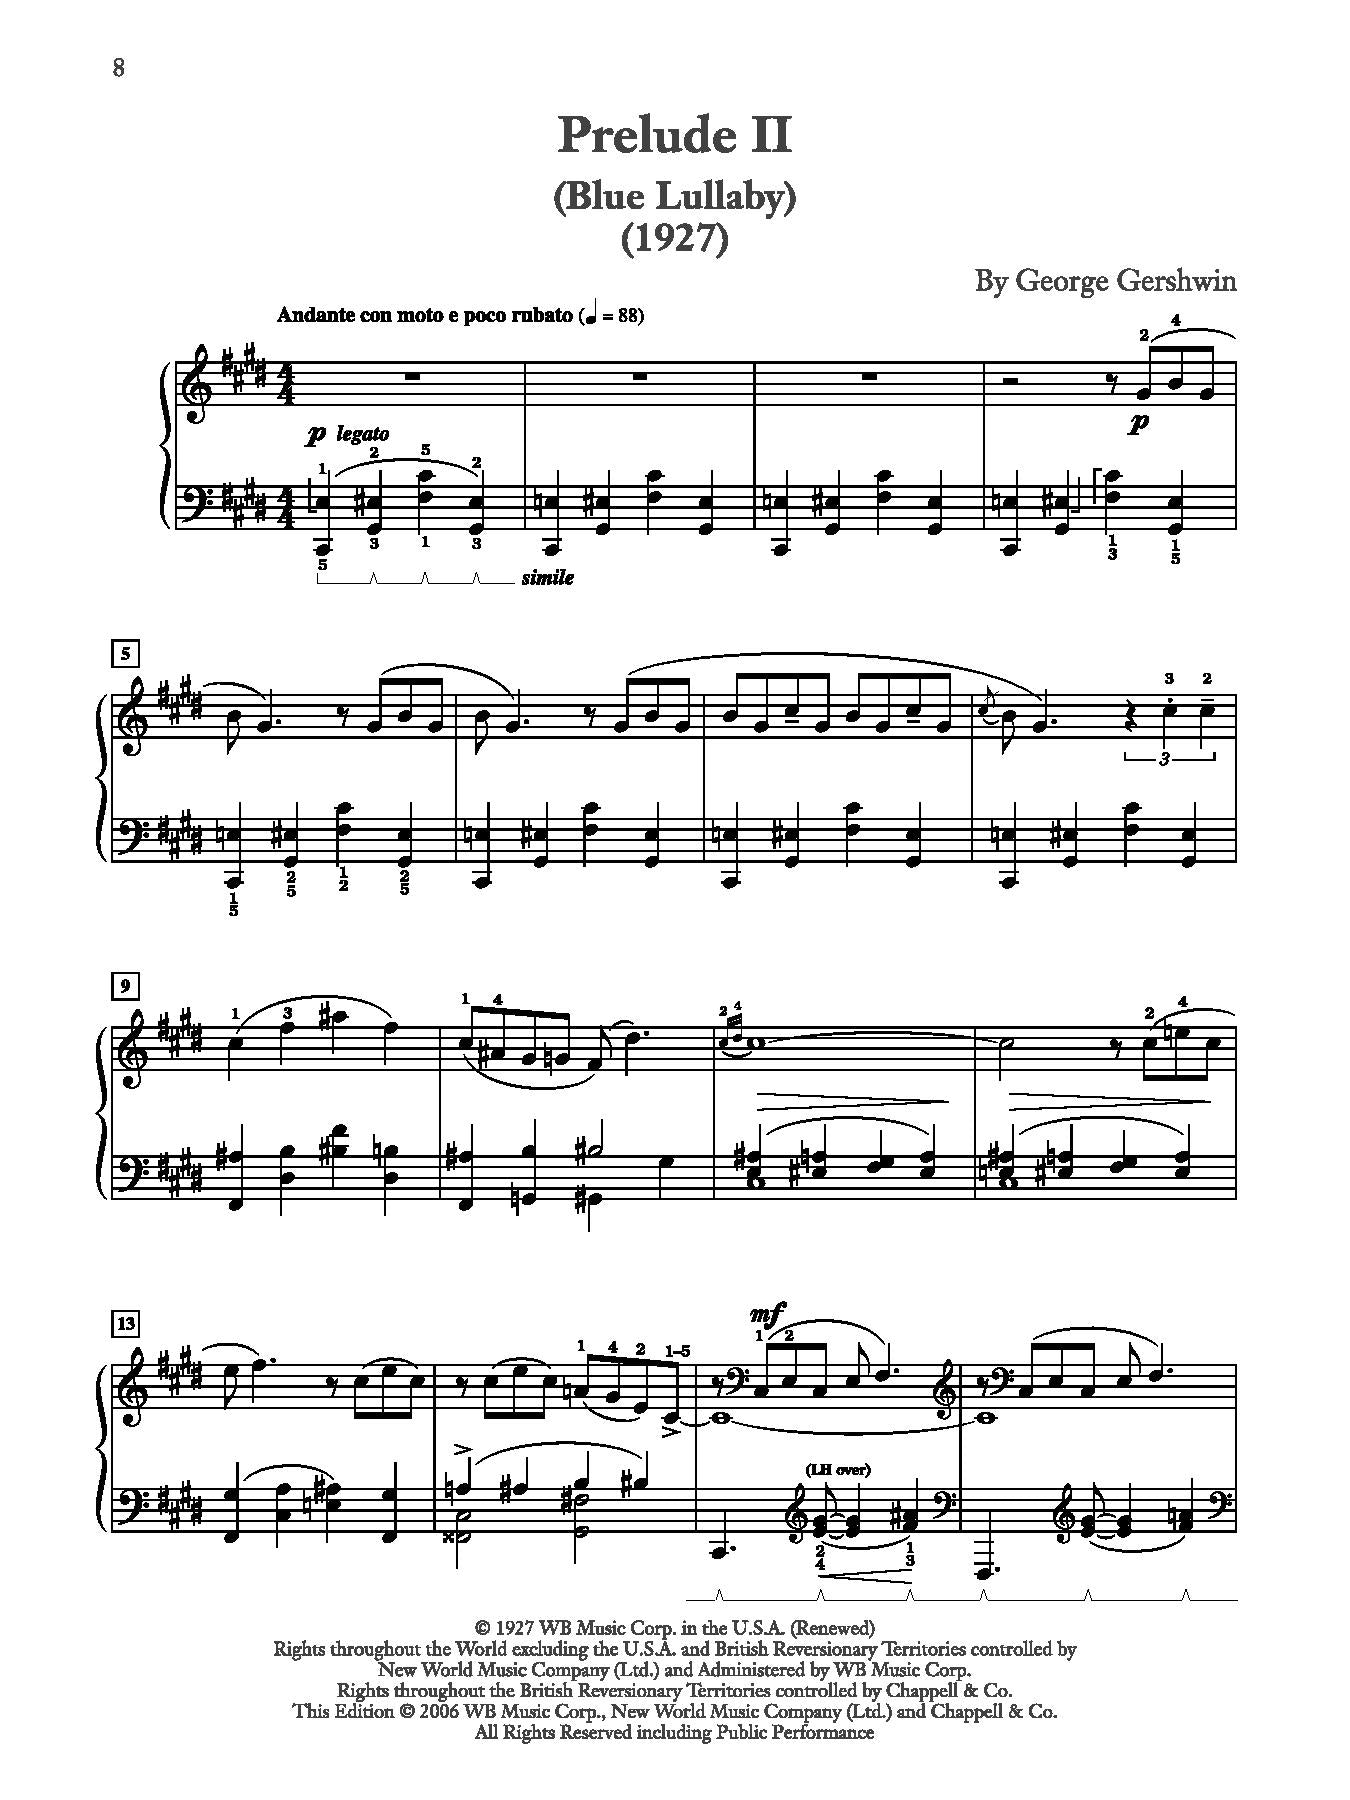 Gershwin: Three Preludes